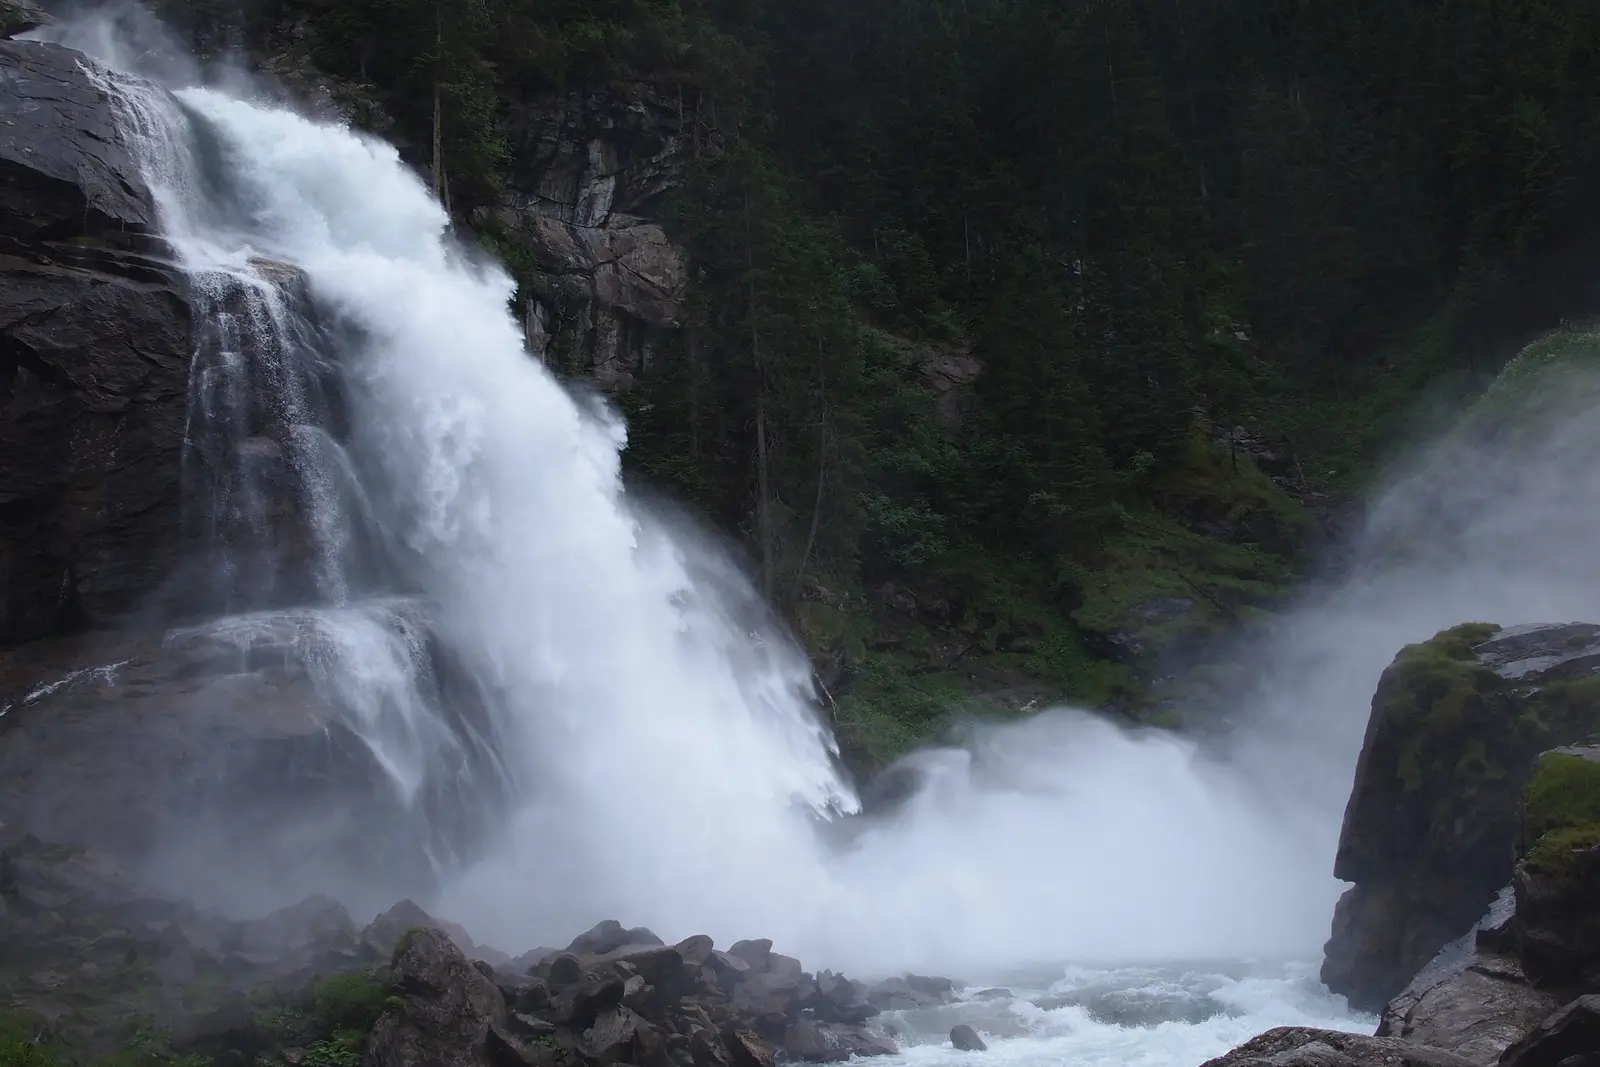 Krimml Waterfalls hike / Krimml Wasserfälle Wanderung